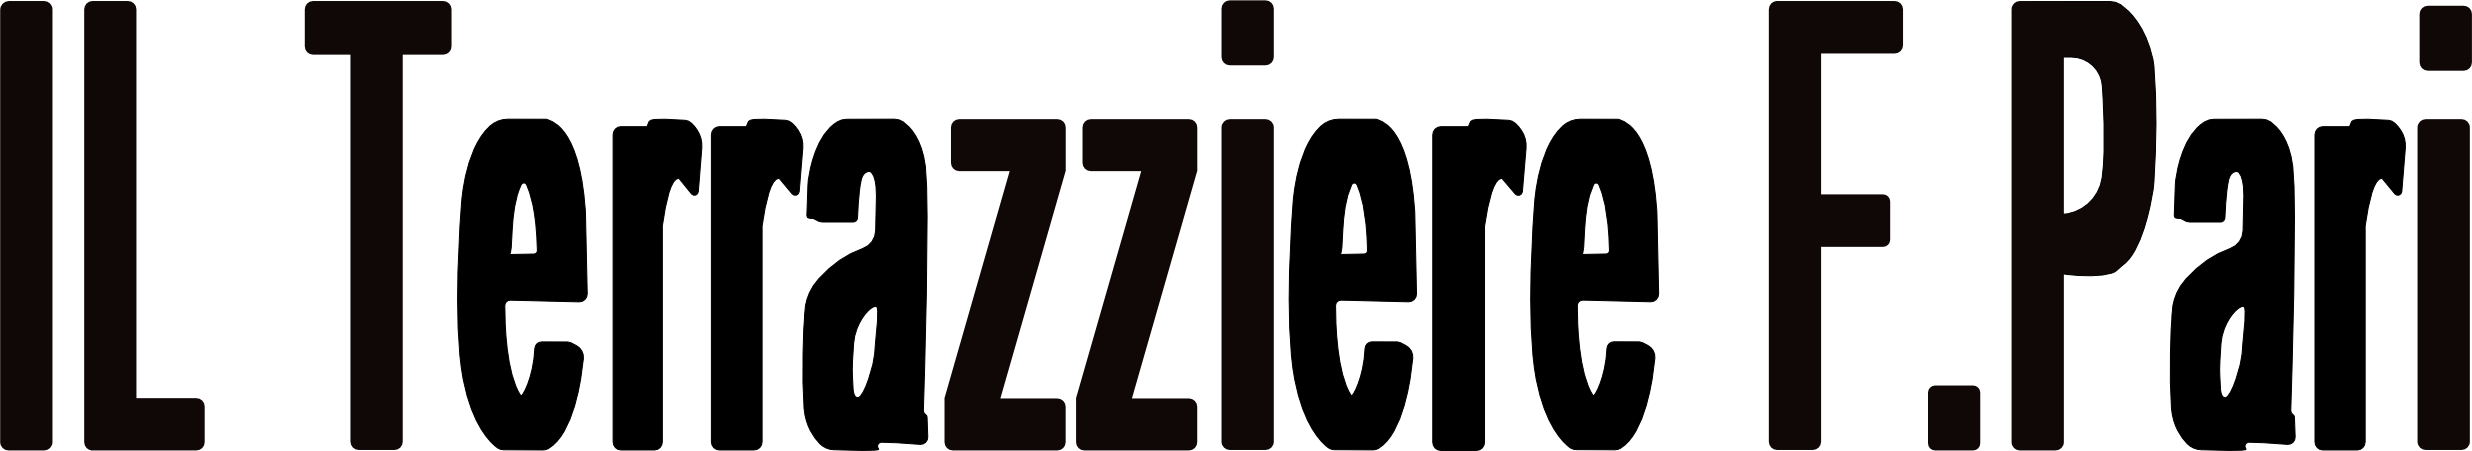 Logo van Il Terrazziere F.Pari